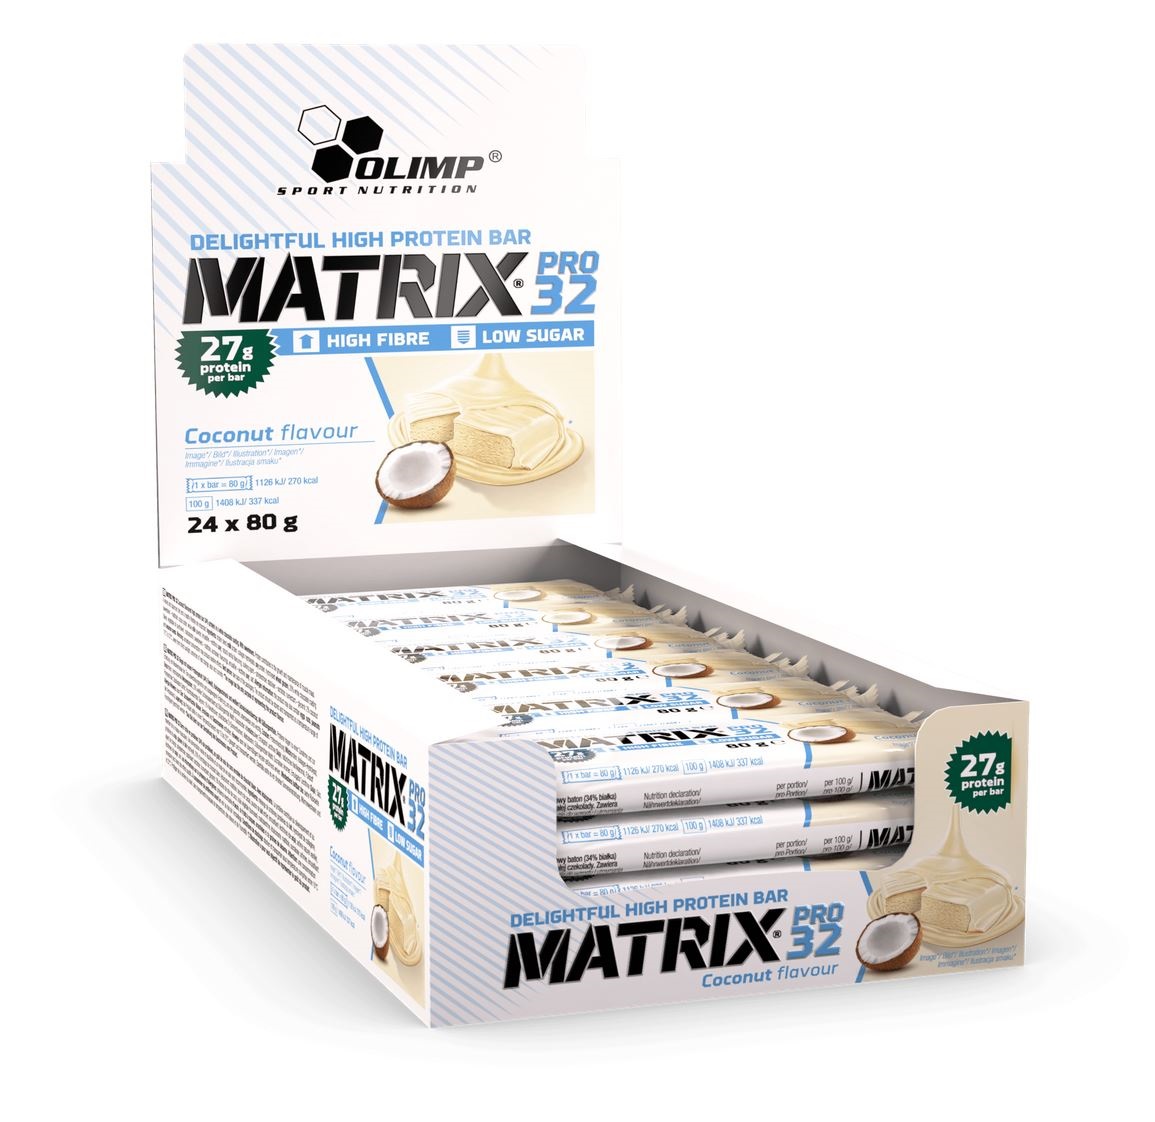 Olimp Matrix Pro 32 Bar, 24x80g im Karton